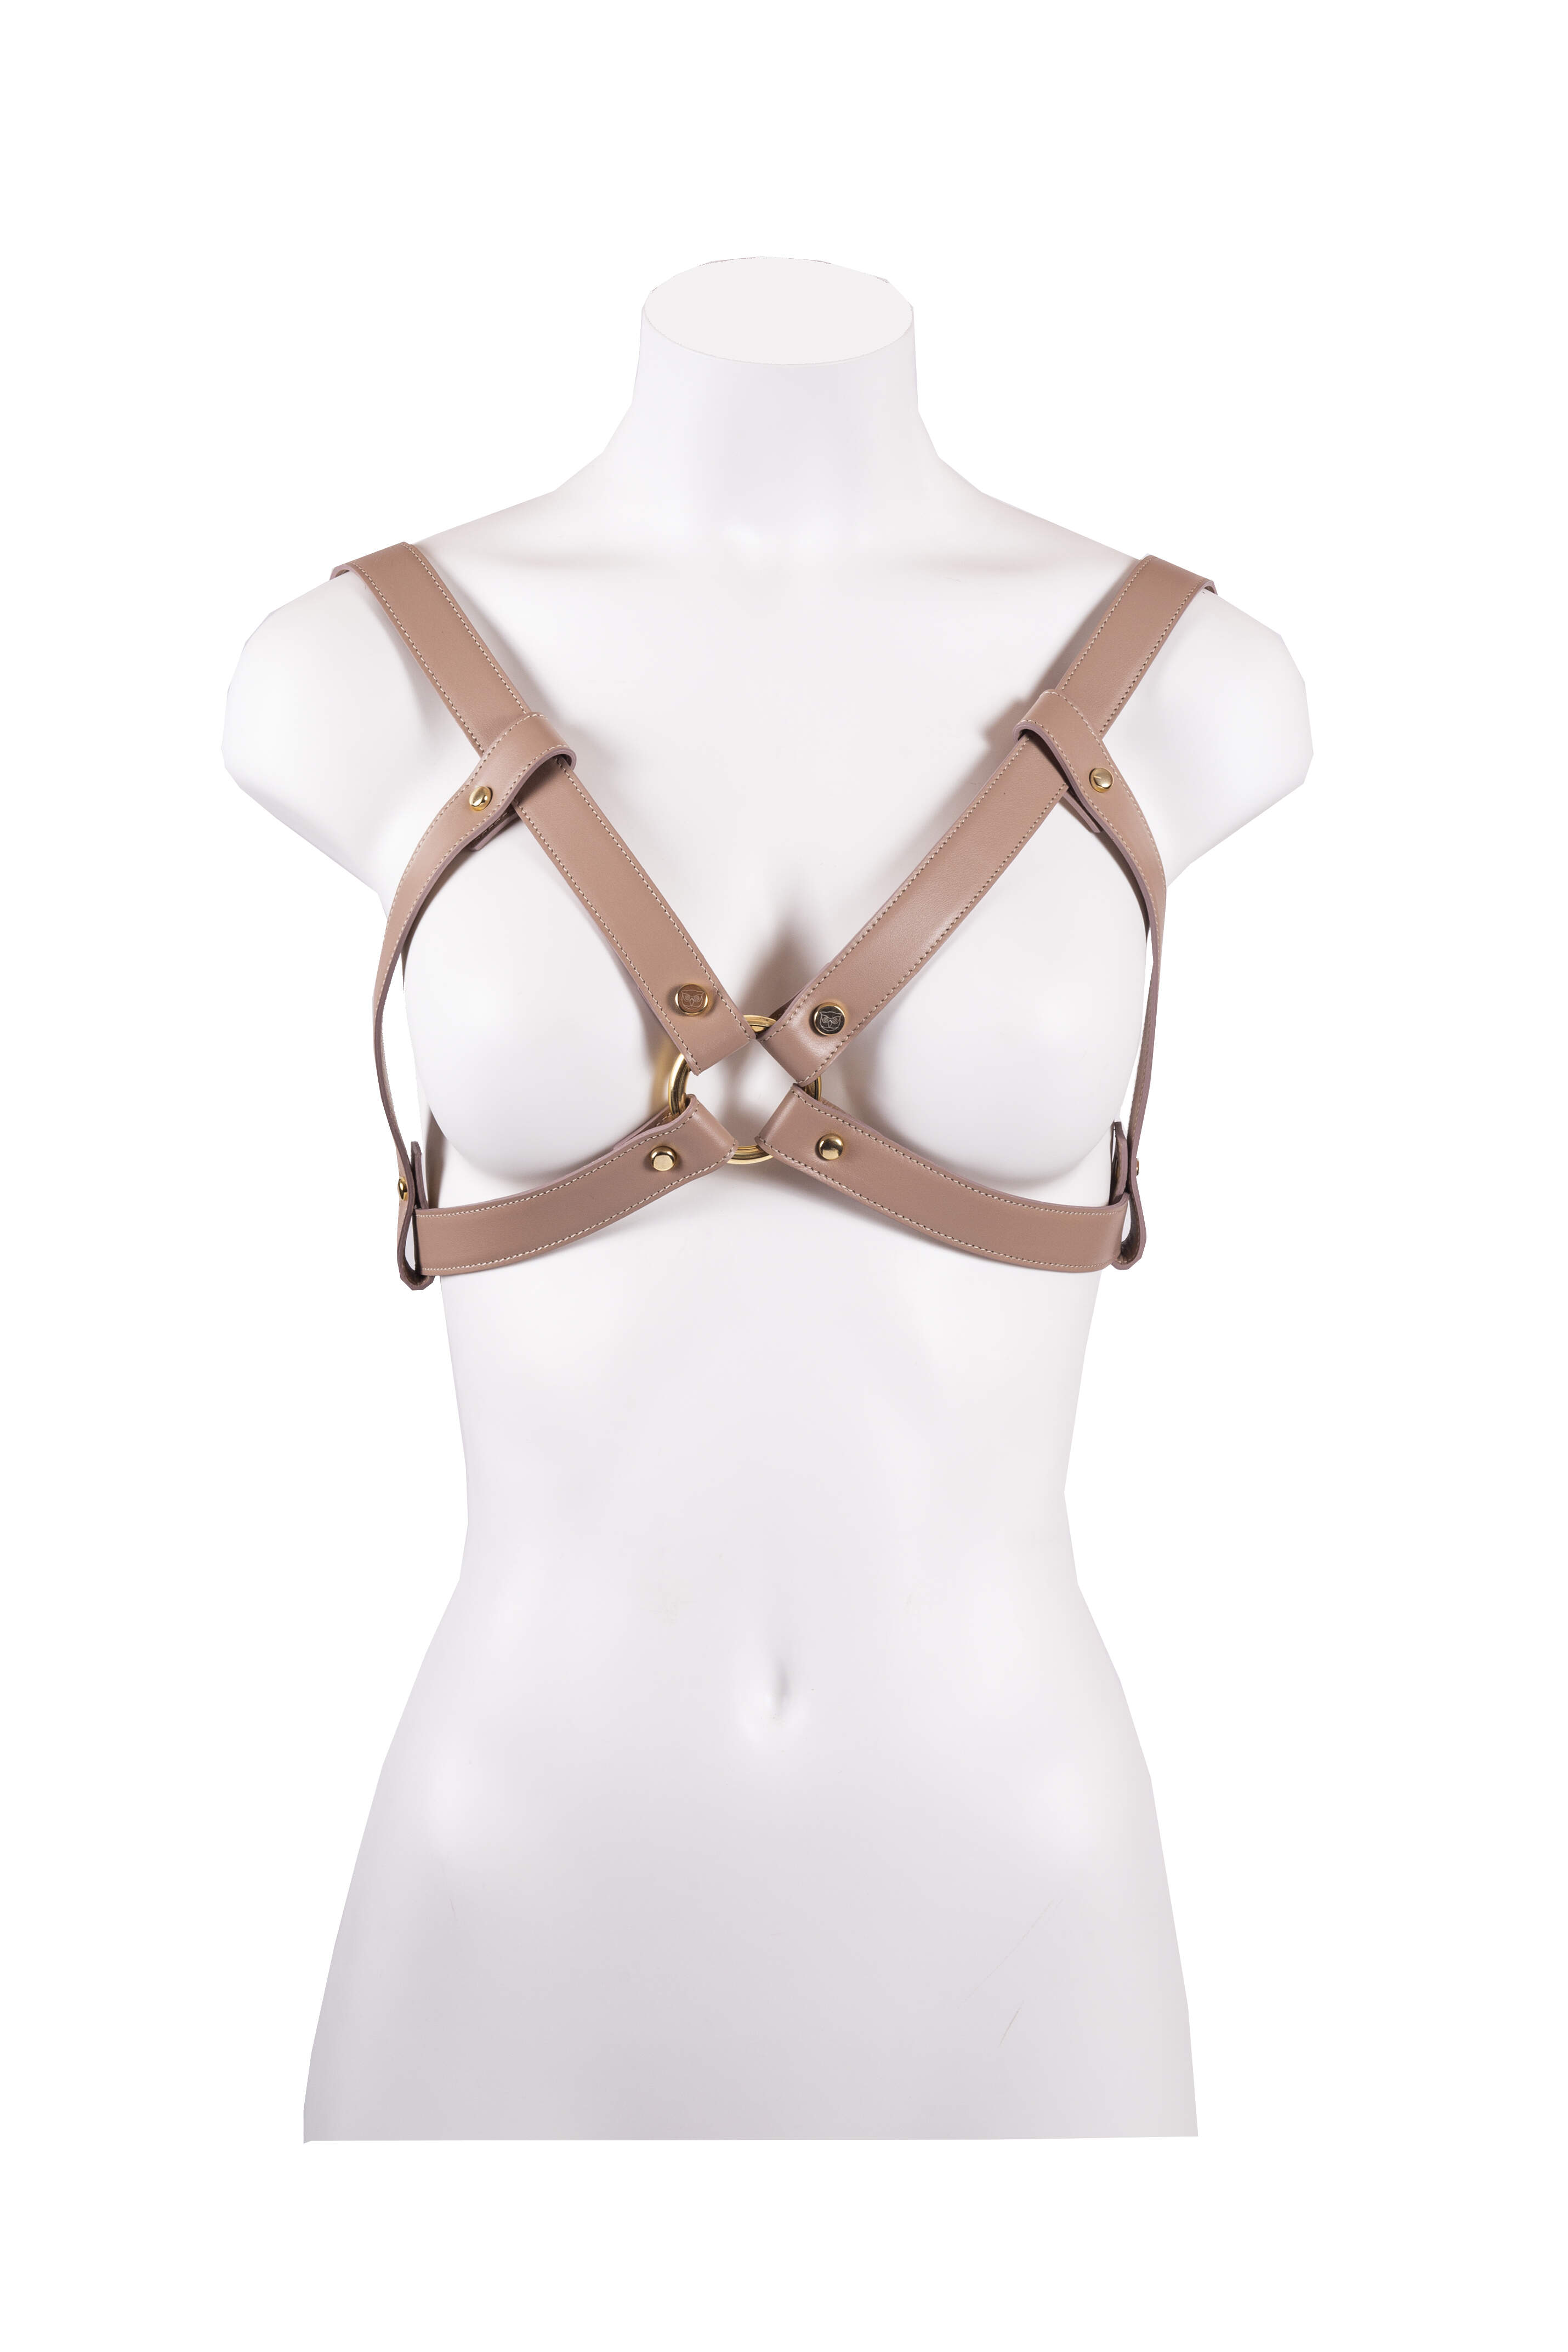 Harness in Vitello liscio made in Italy